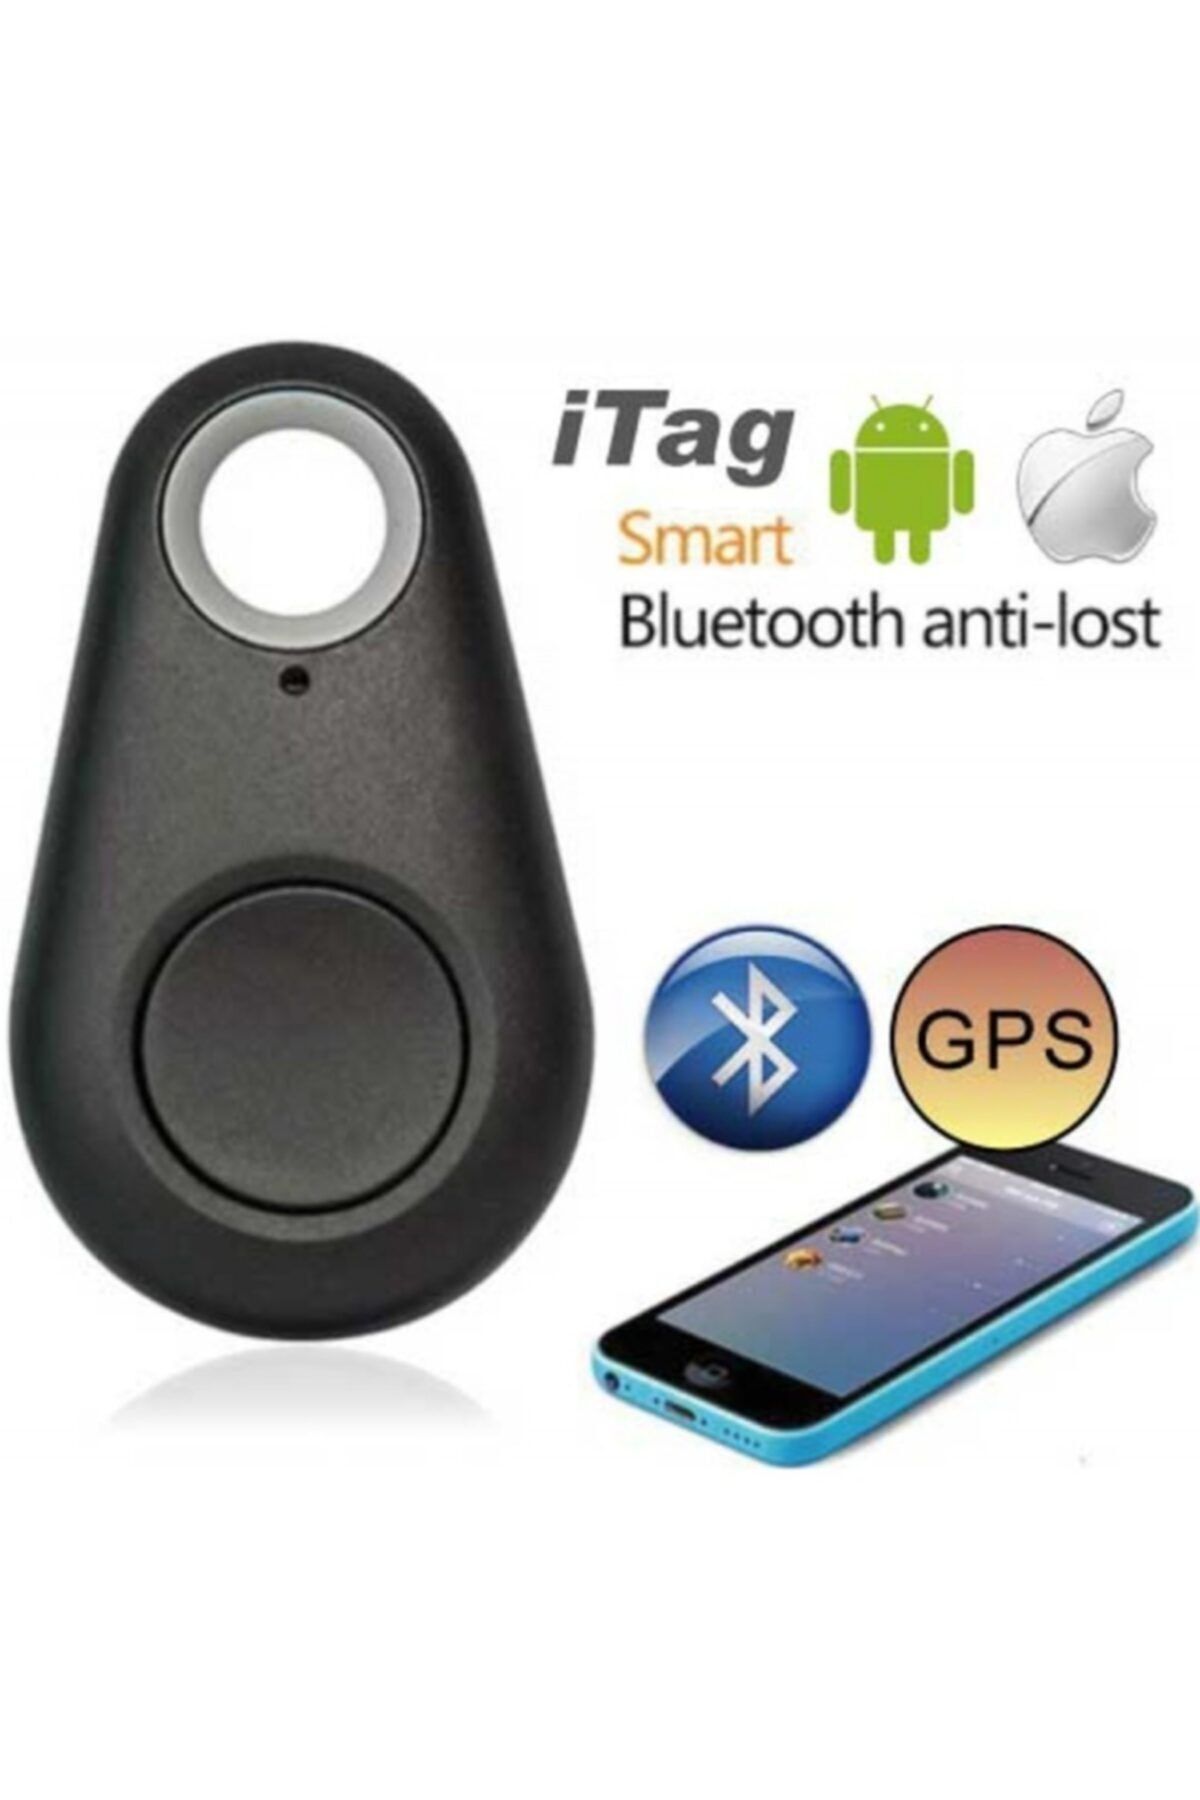 Elite-K Itag Bluetooth Akıllı Anahtarlık Telefon Eşya Pet Bulucu Alarmlı Kayıp Önleyici Konum Bulucu